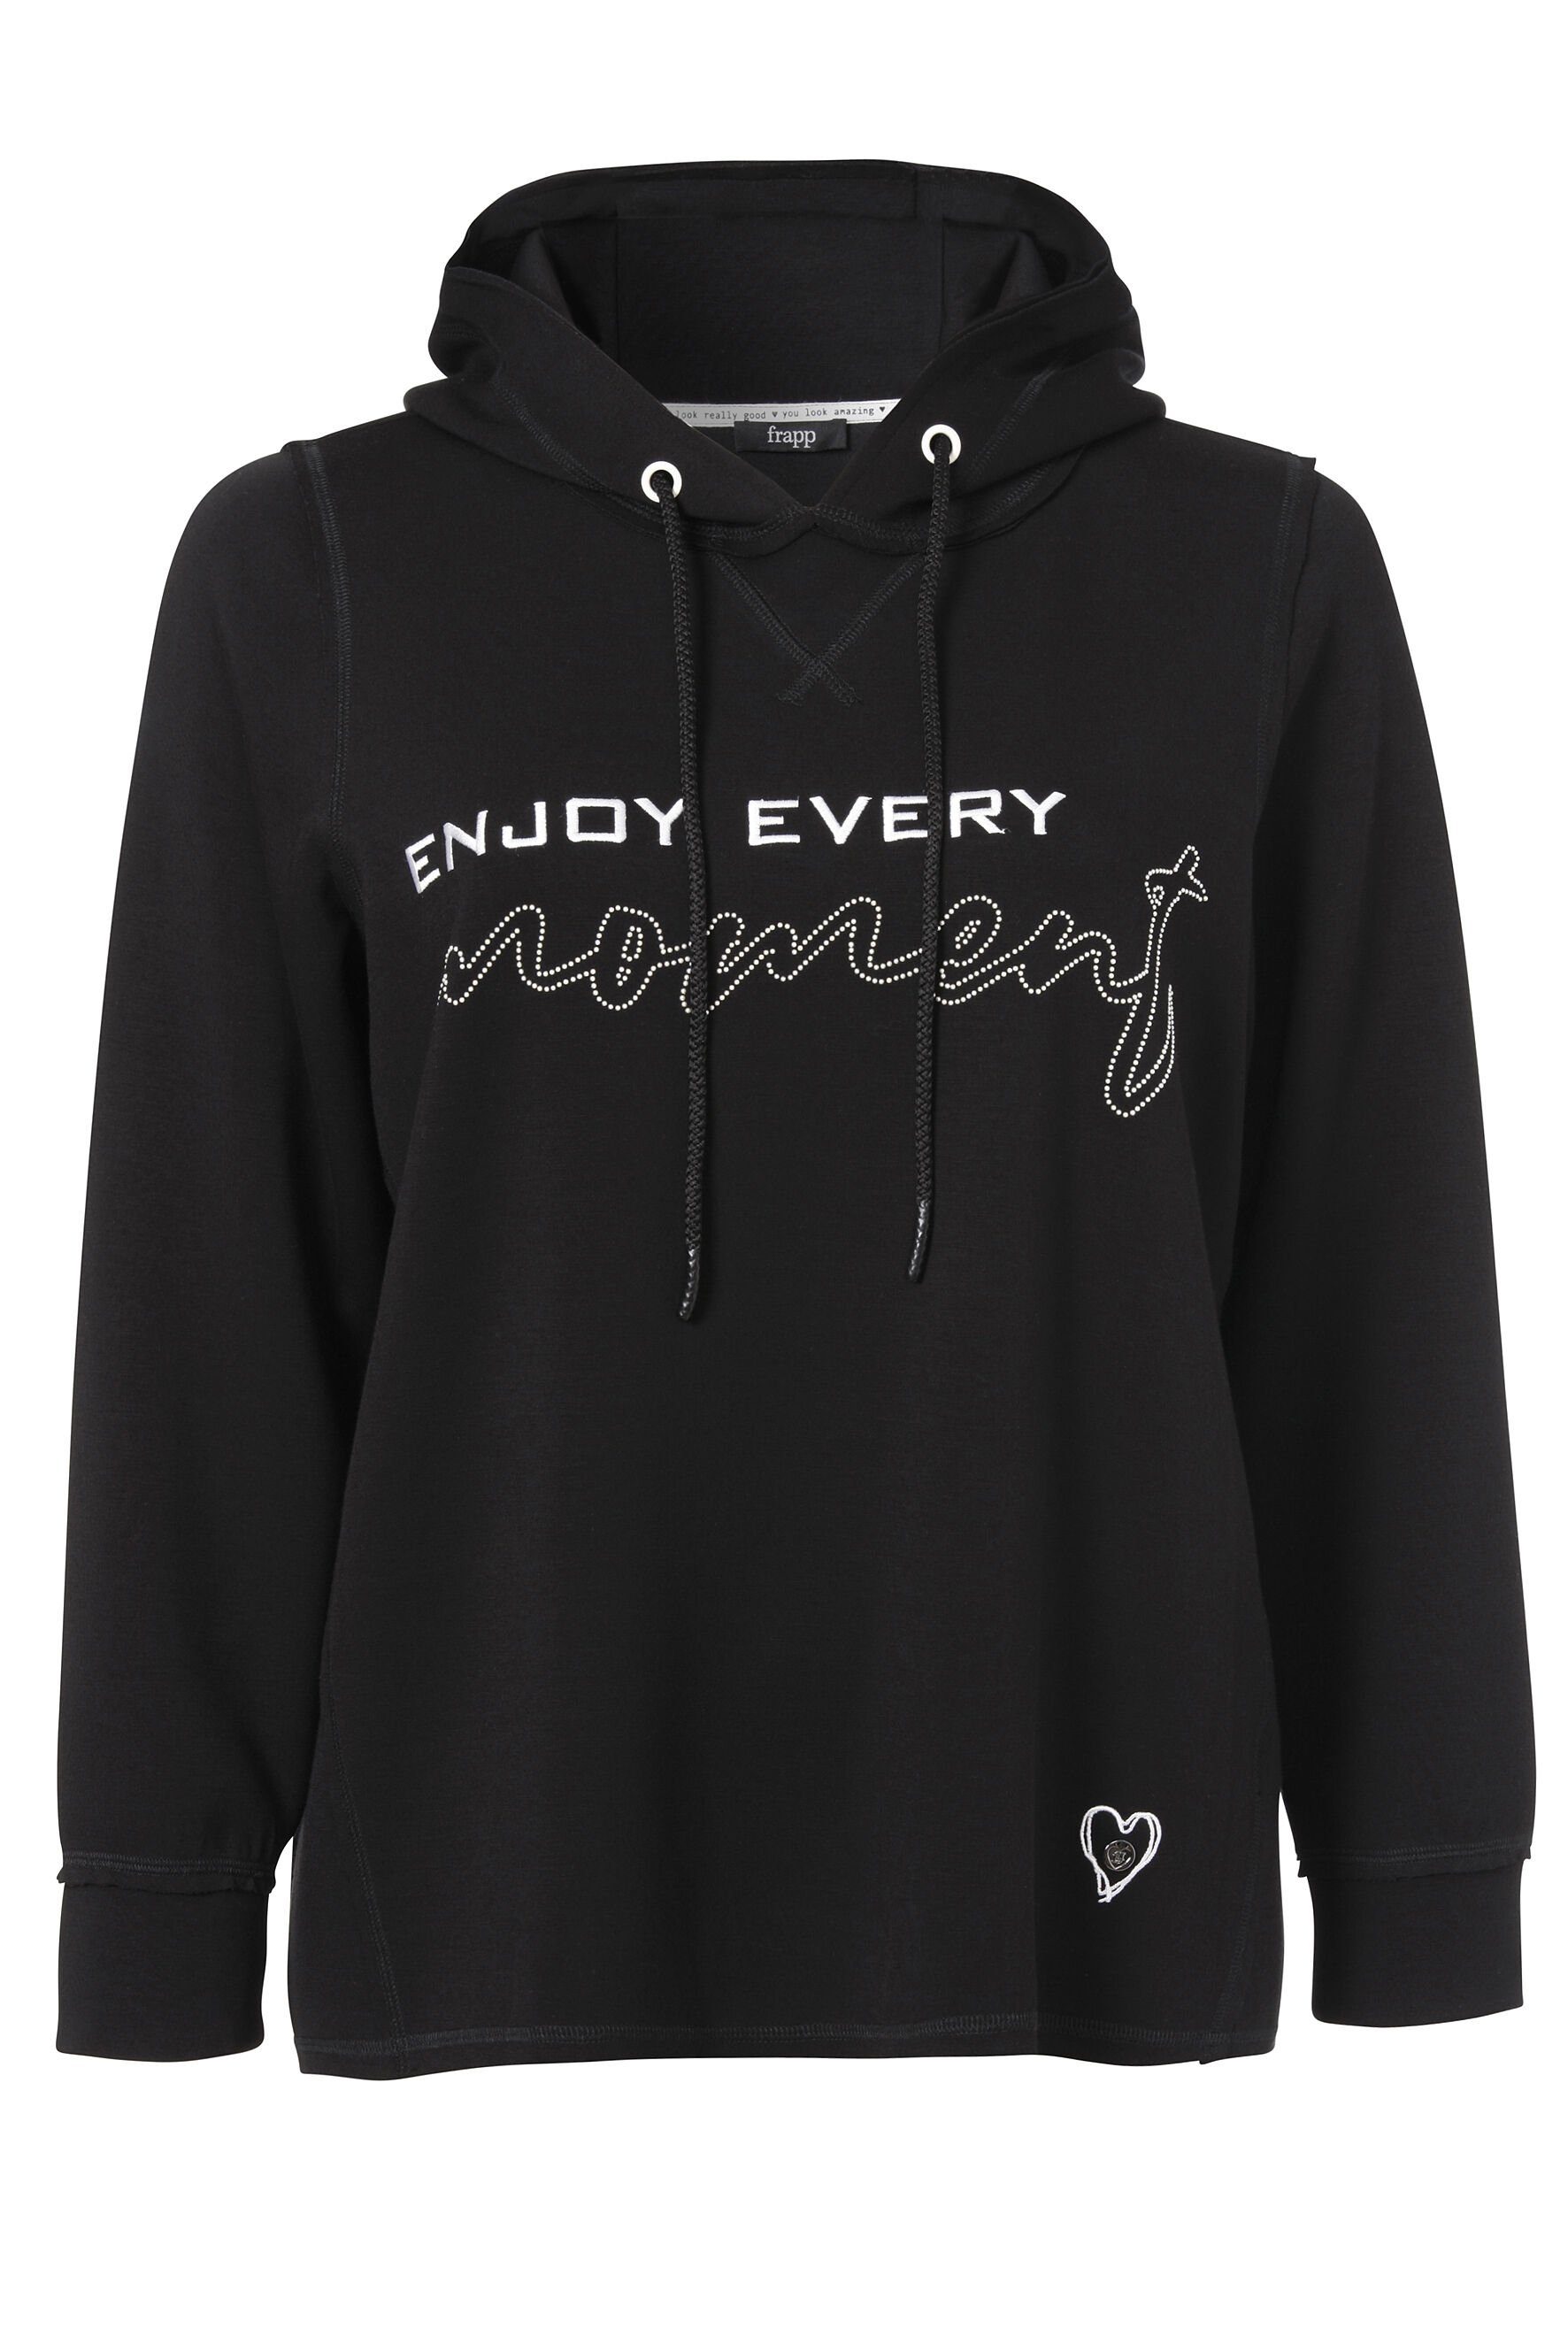 FRAPP Sweatshirt Sportives Kapuzensweatshirt in unifarbenem Stil mit glänzenden Glitzerdetails black / offwhite